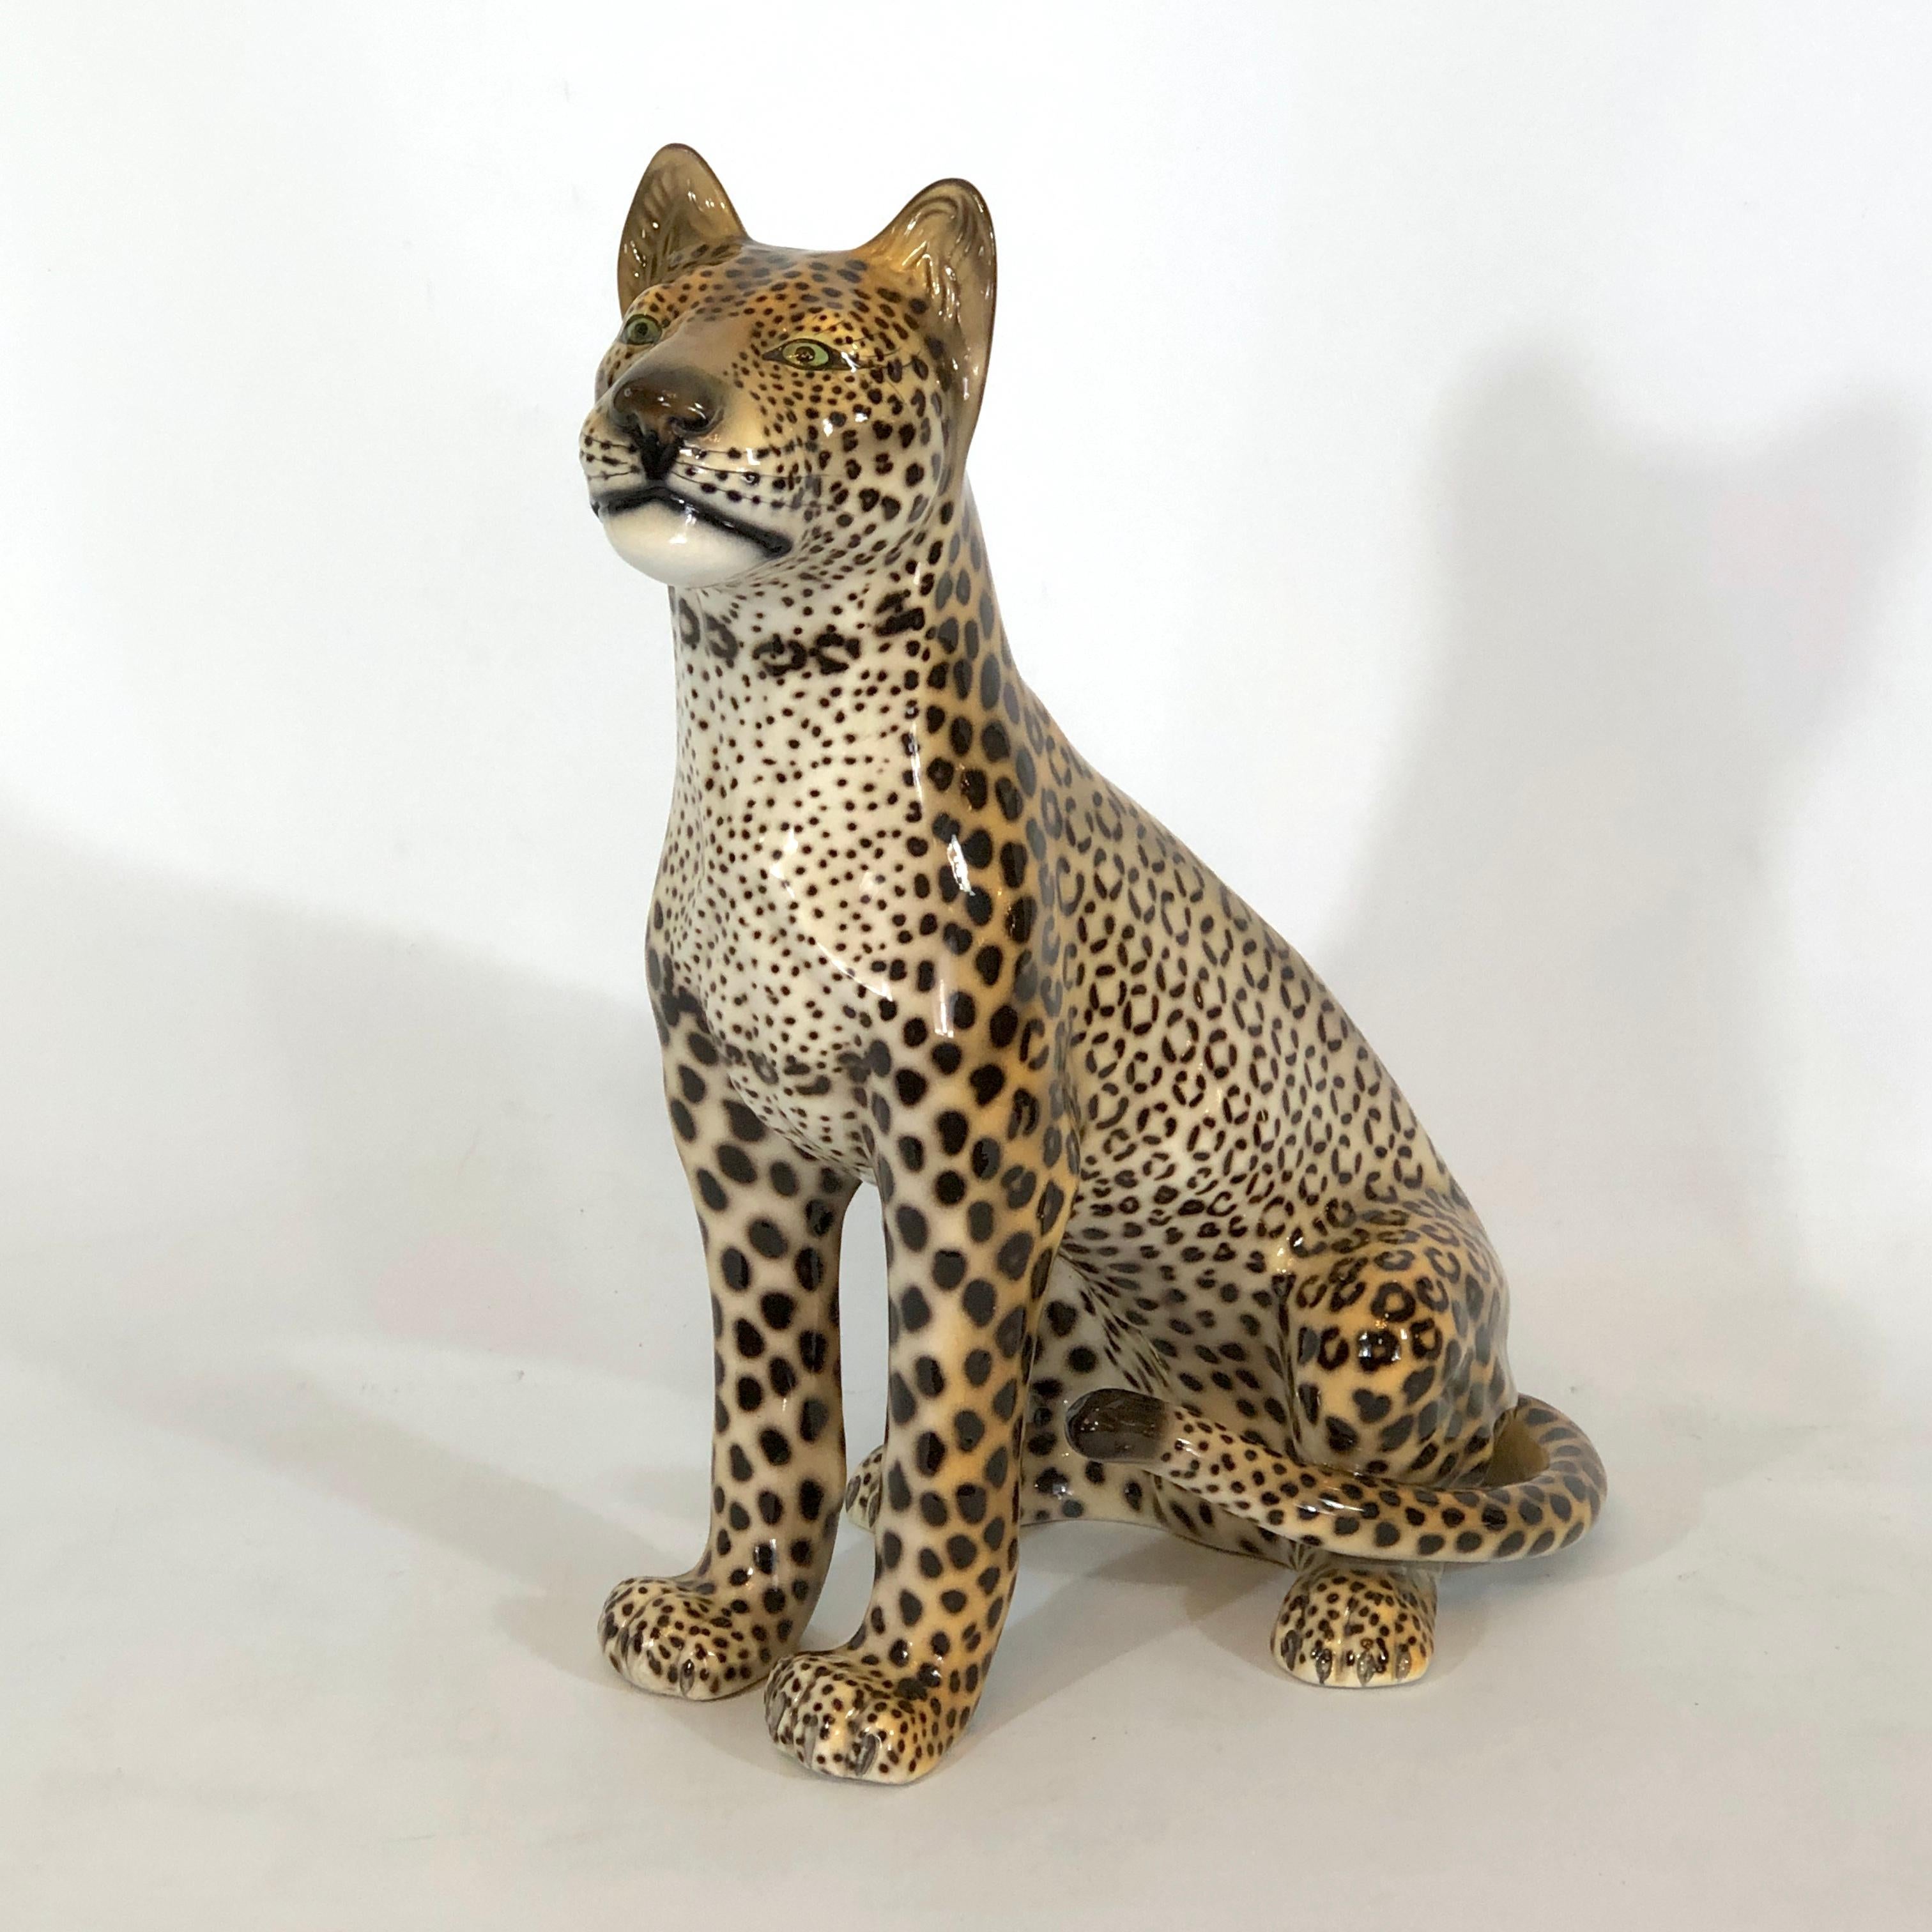 Toller Vintage-Zustand für diesen skulpturalen, handbemalten Keramik-Leoparden, der in den 60er Jahren in Italien hergestellt wurde und von Favaro Cecchetto signiert ist.